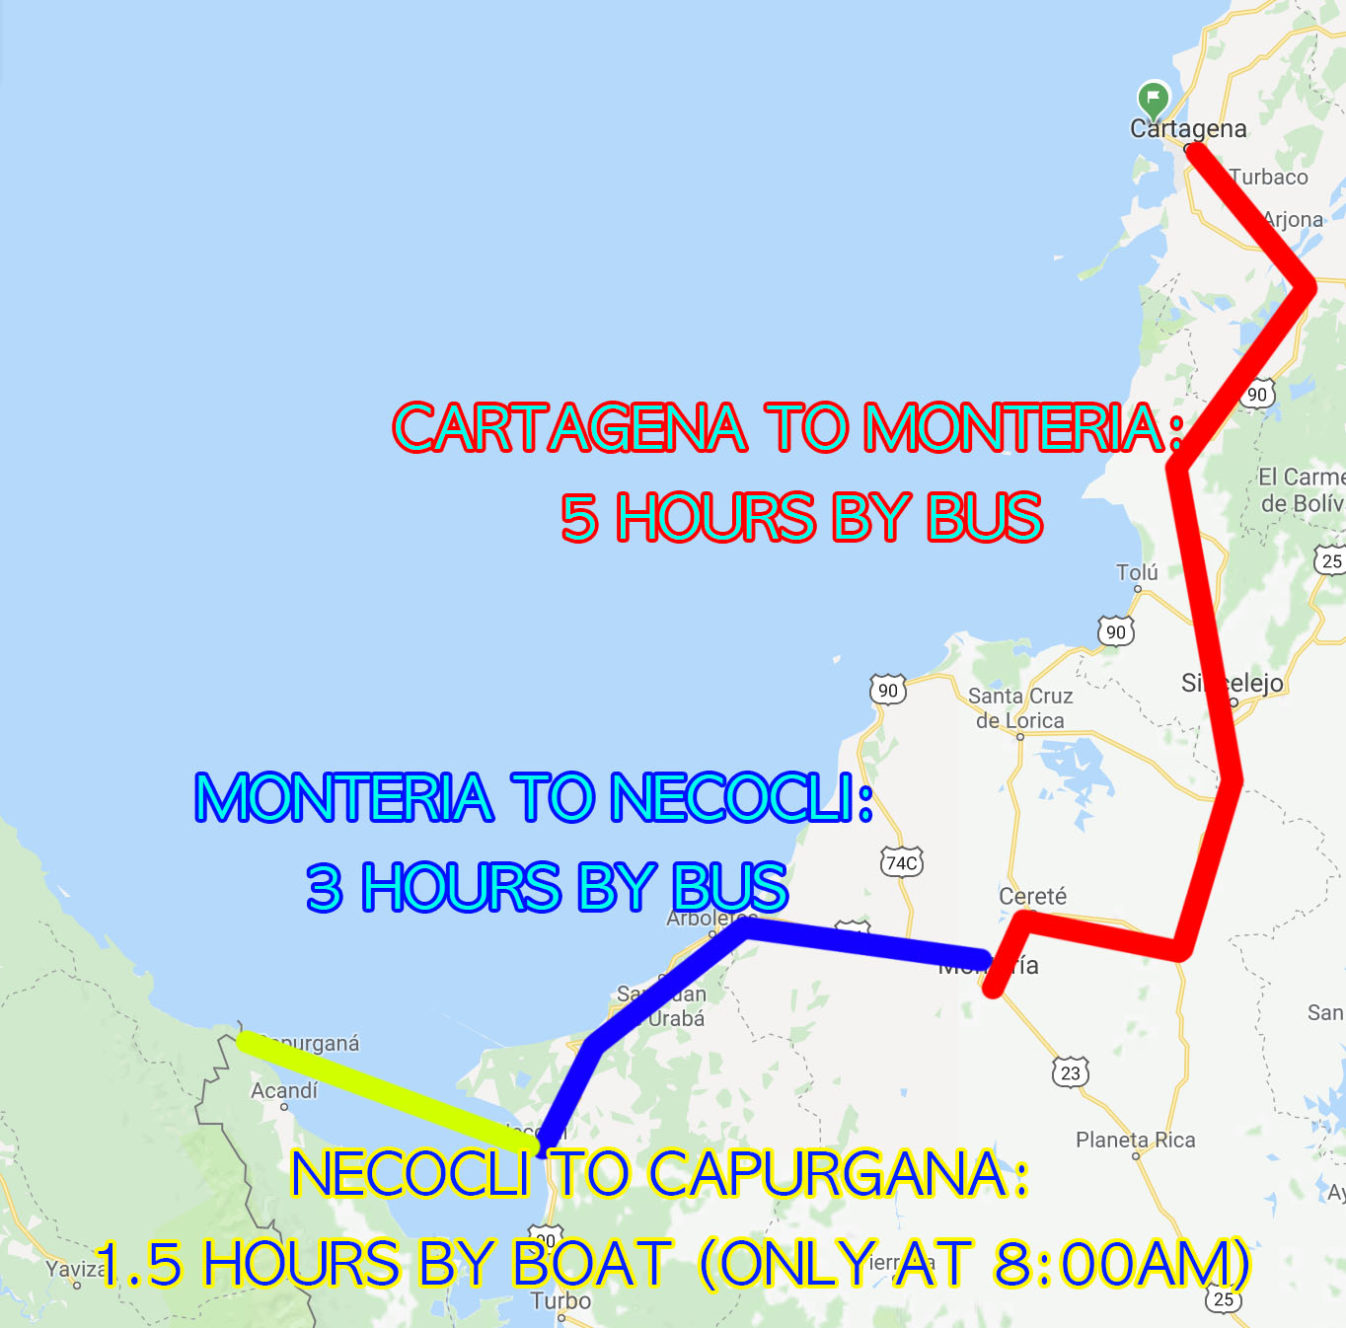 how to get to Capurgana from Cartagena via necocli